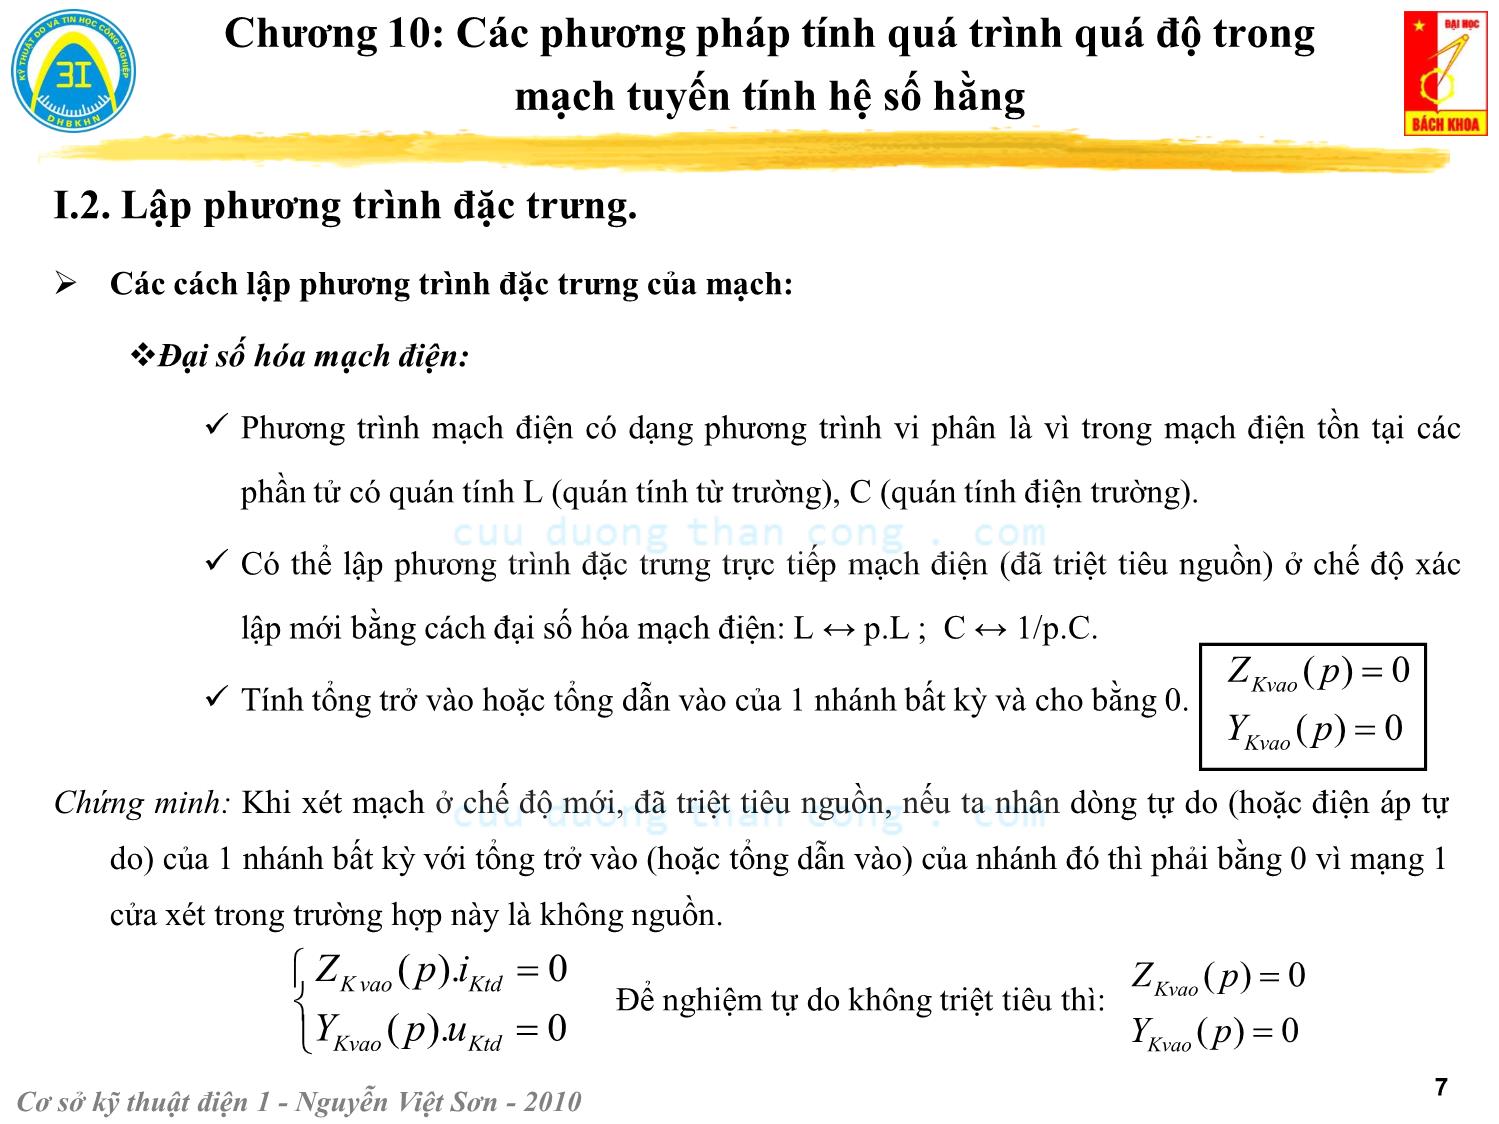 Bài giảng Kỹ thuật điện 1 - Chương 10: Các phương pháp tính quá trình quá độ trong mạch điện tuyến tính - Nguyễn Việt Sơn trang 7